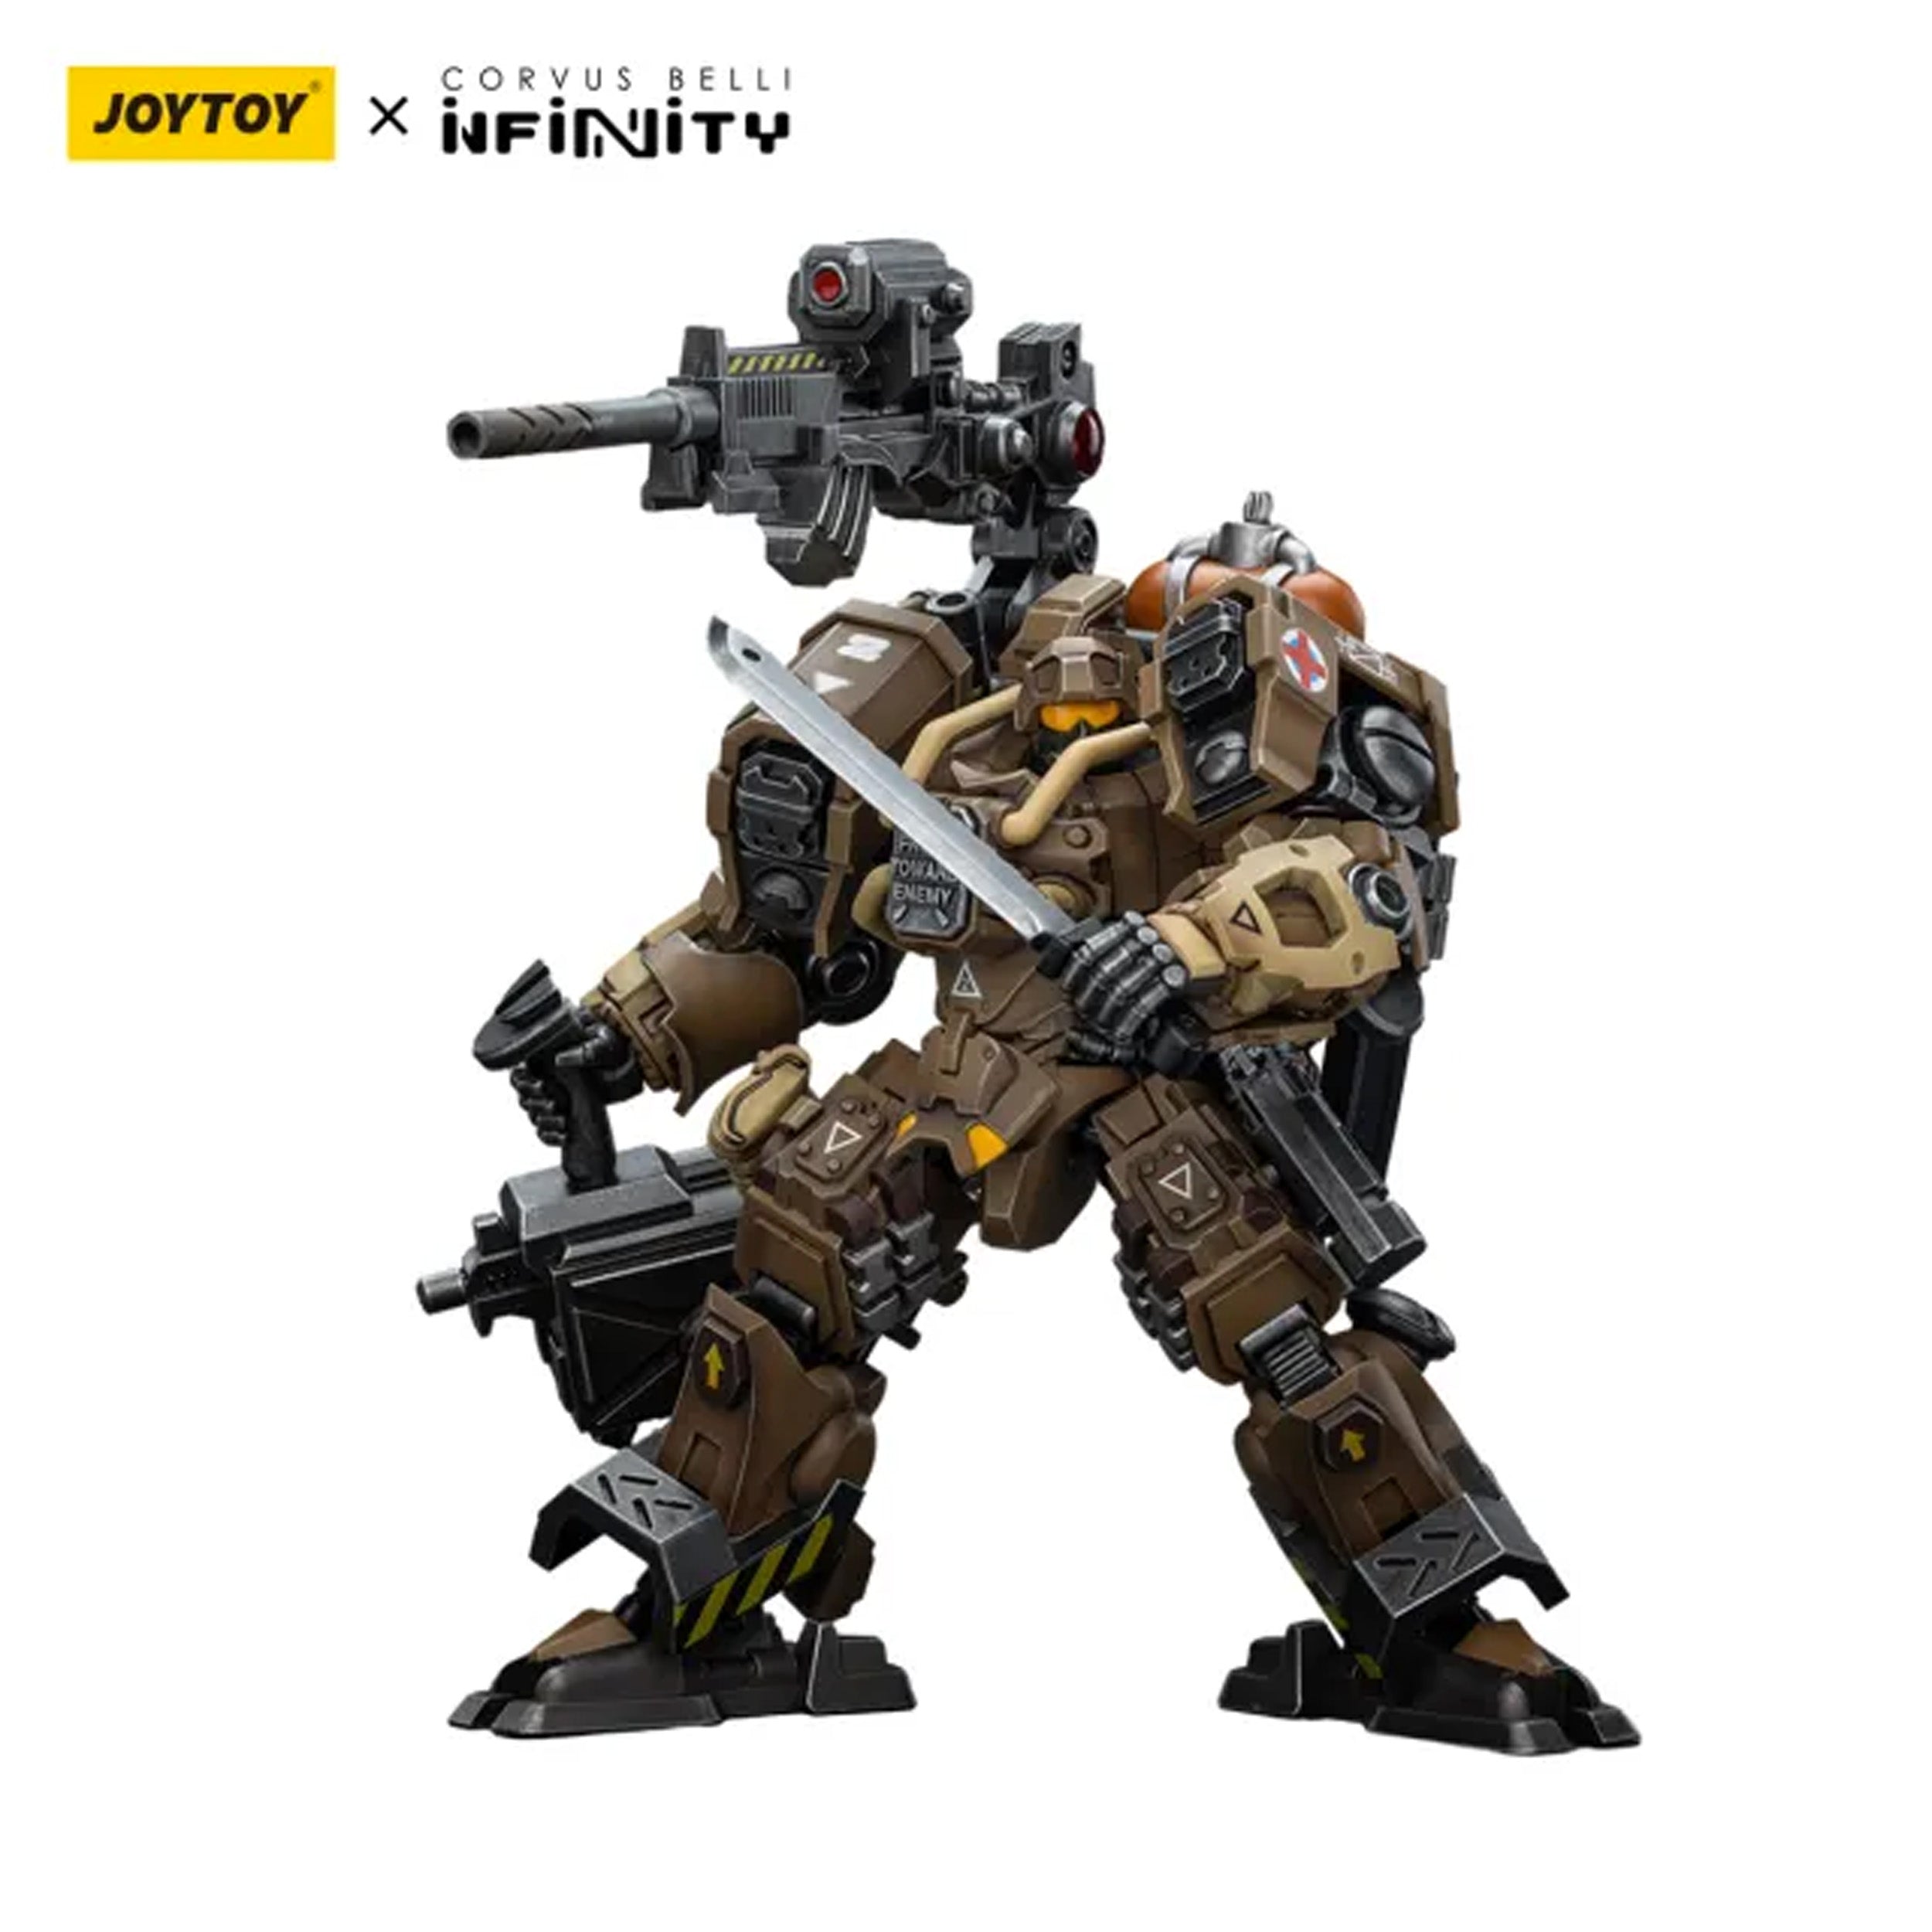 Joy Toy - JT9763 - Infinity (Corvus Belli) - Ariadna - Blackjacks, 10th Heavy Ranger Bat. (T2 Sniper) (1/18 Scale) - Marvelous Toys